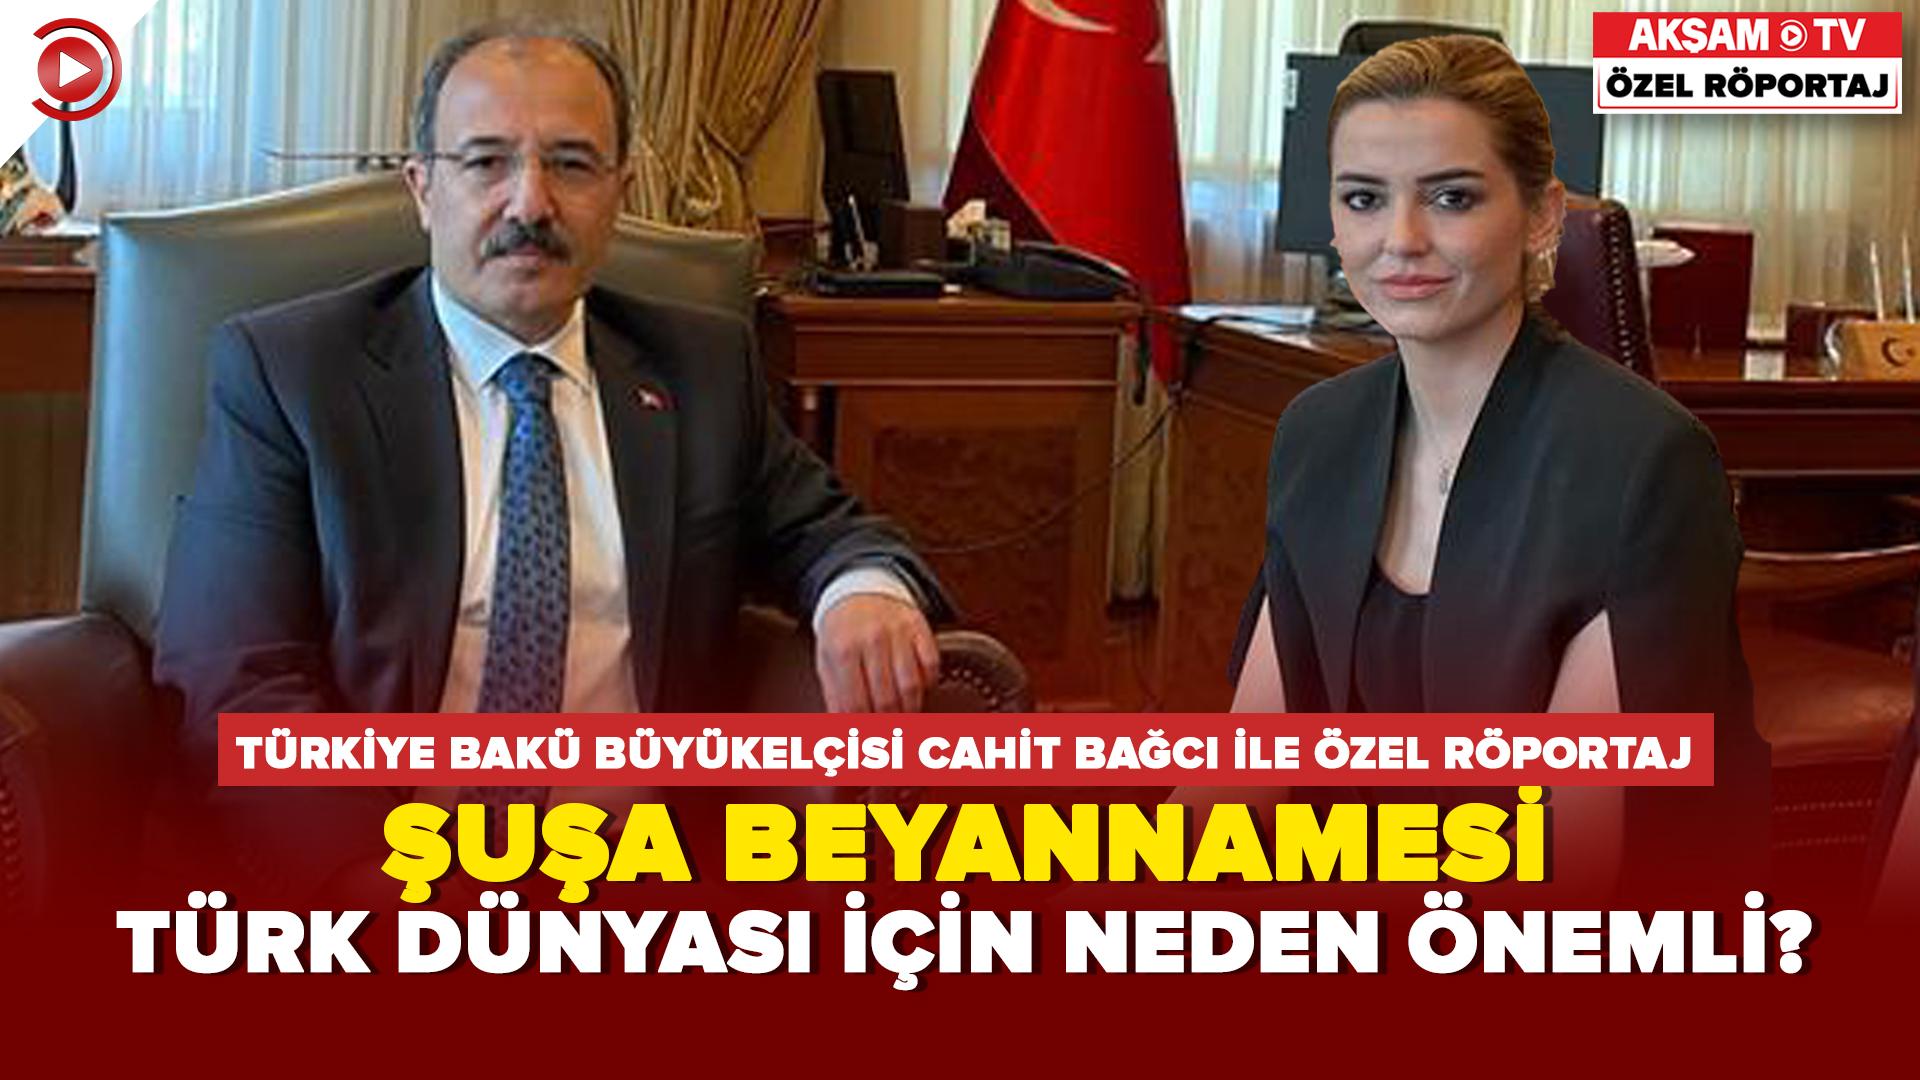 Türkiye'nin Bakü Büyükelçisi Bağcı Akşam TV'ye konuştu... Şuşa Beyannamesi Türk Dünyası için neden önemli?